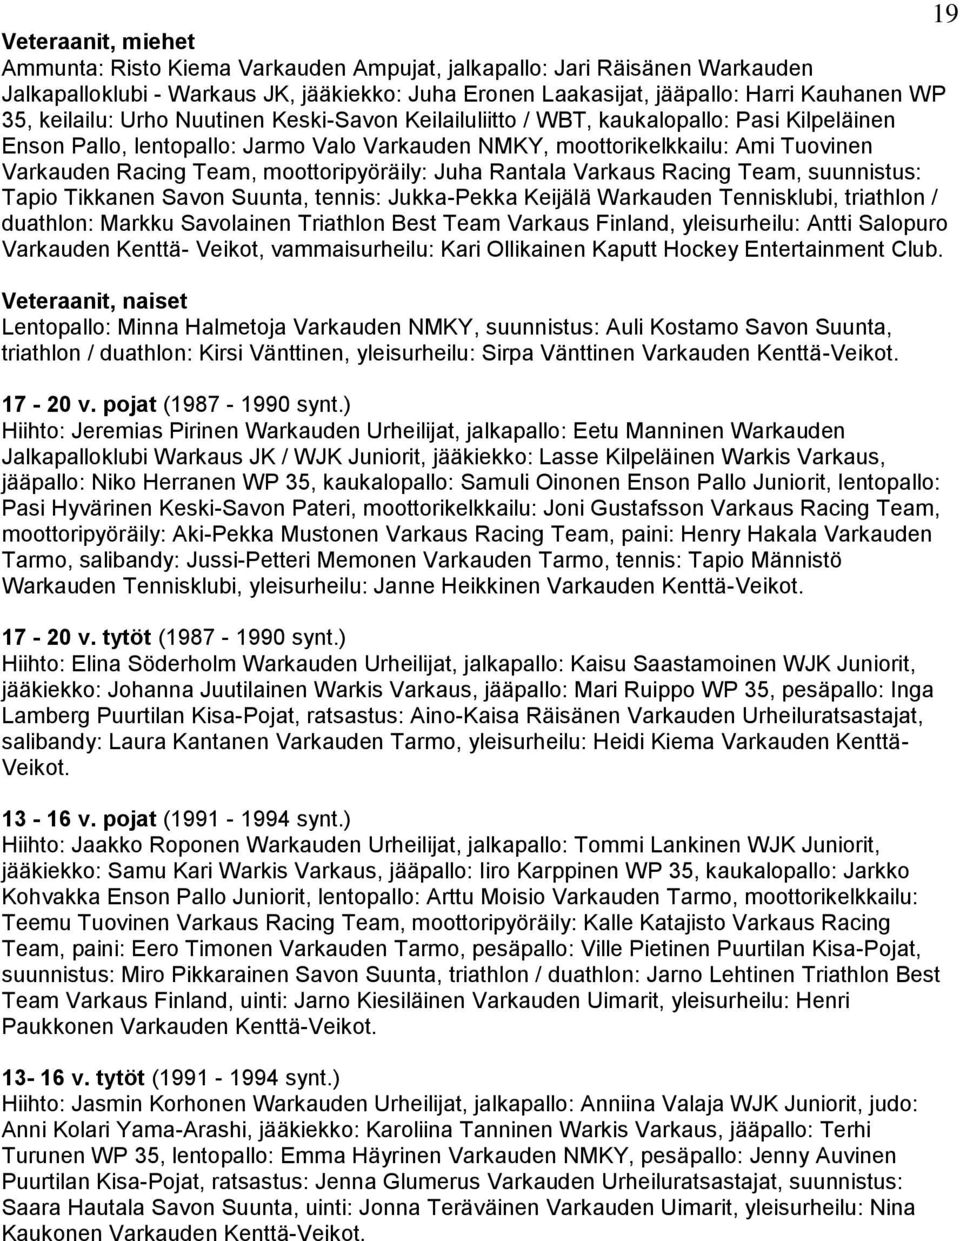 moottoripyöräily: Juha Rantala Varkaus Racing Team, suunnistus: Tapio Tikkanen Savon Suunta, tennis: Jukka-Pekka Keijälä Warkauden Tennisklubi, triathlon / duathlon: Markku Savolainen Triathlon Best